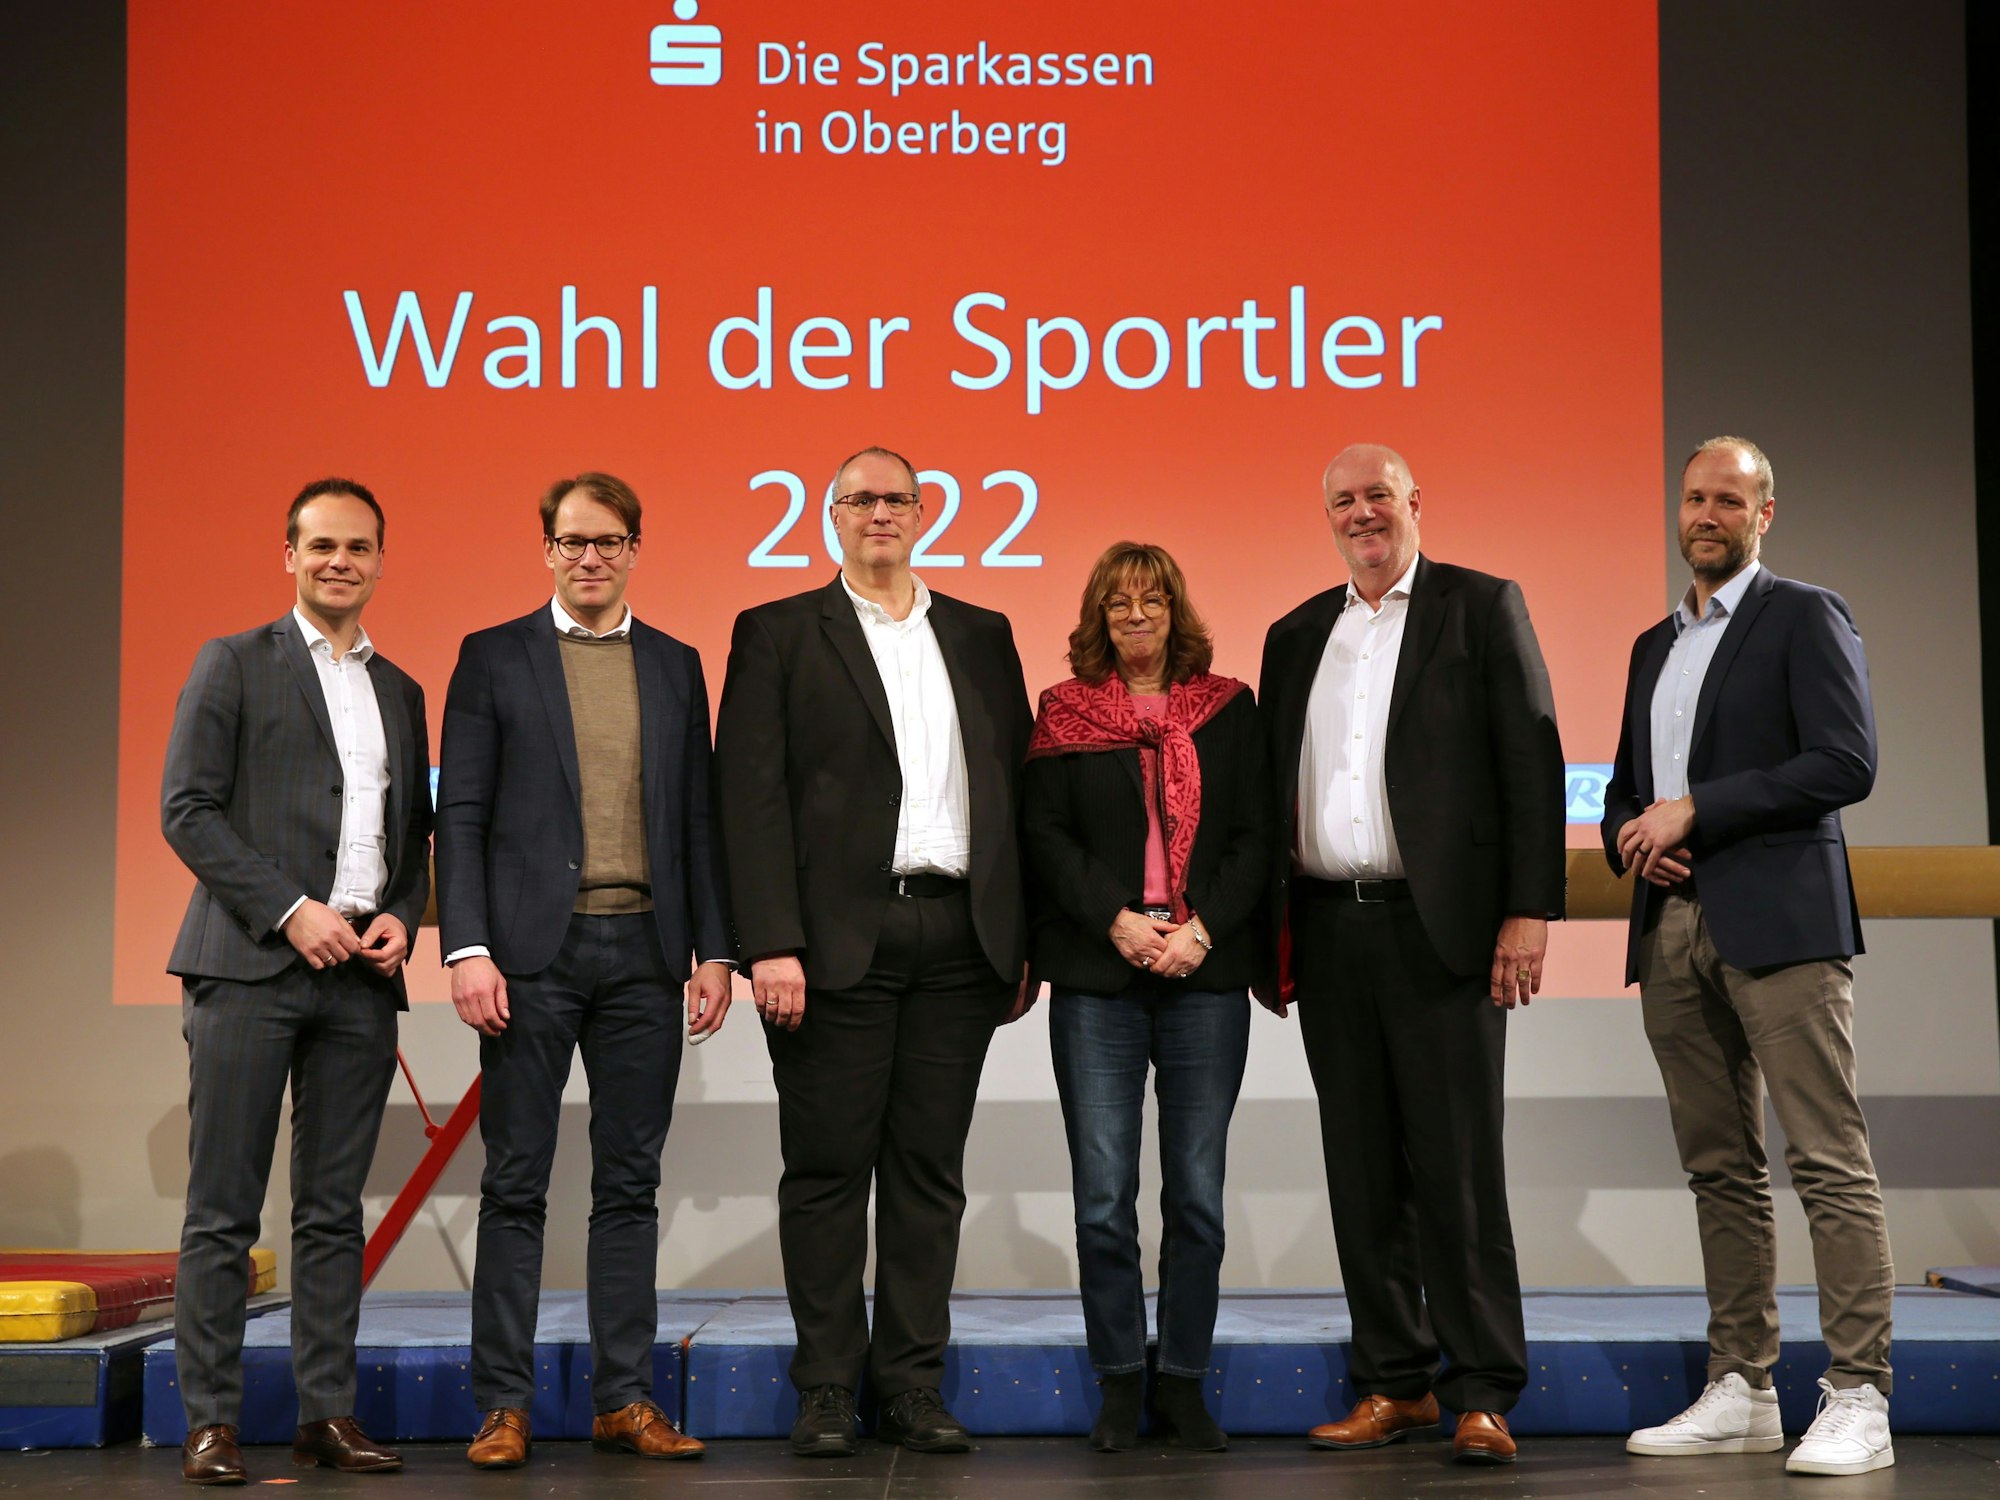 Mehrere schick gekleidete Männer und Frauen stehen nebeneinander auf einer Bühne vor einer Leinwand mit der Aufschrift „Wahl der Sportler 2022“.